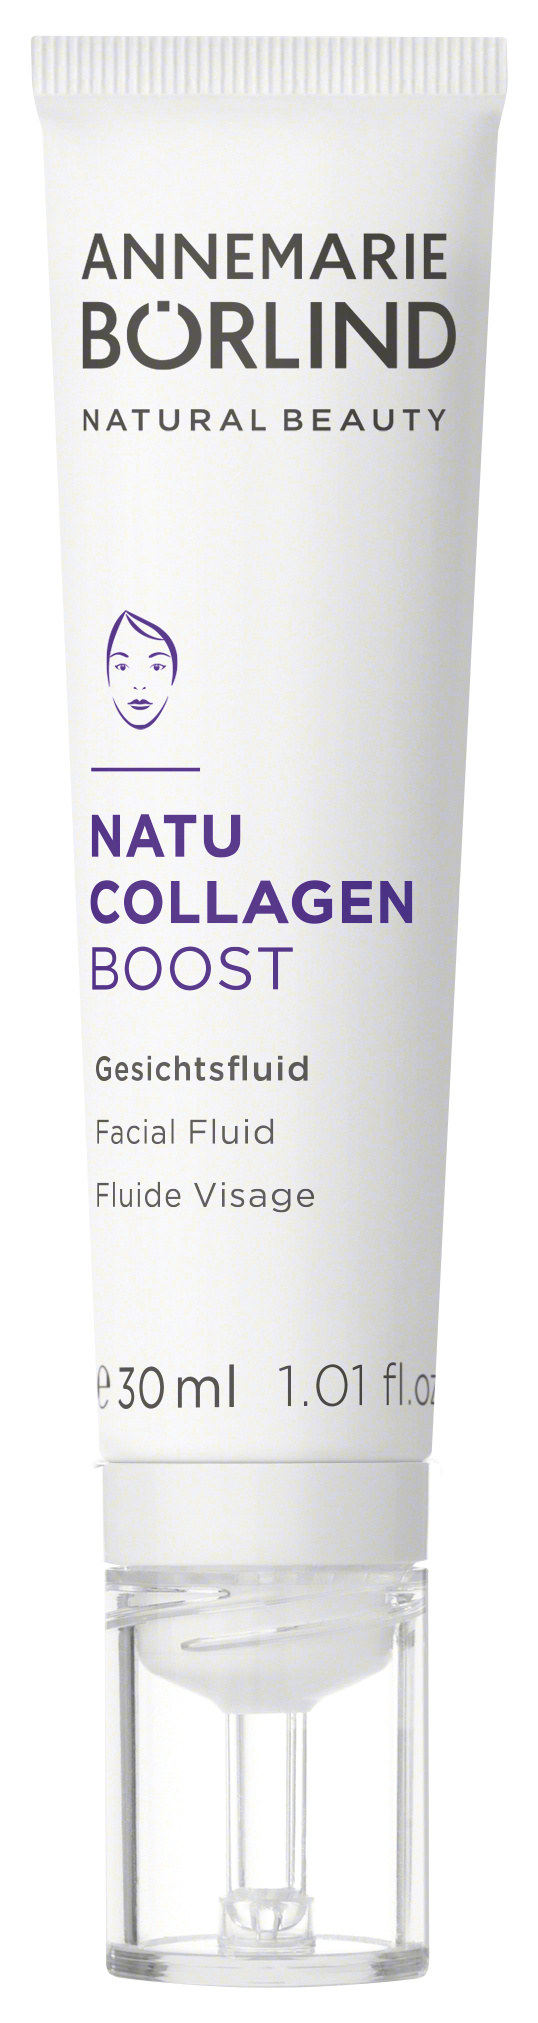 Börlind Natu Collagen Boost Gesichtsfluid 30ml